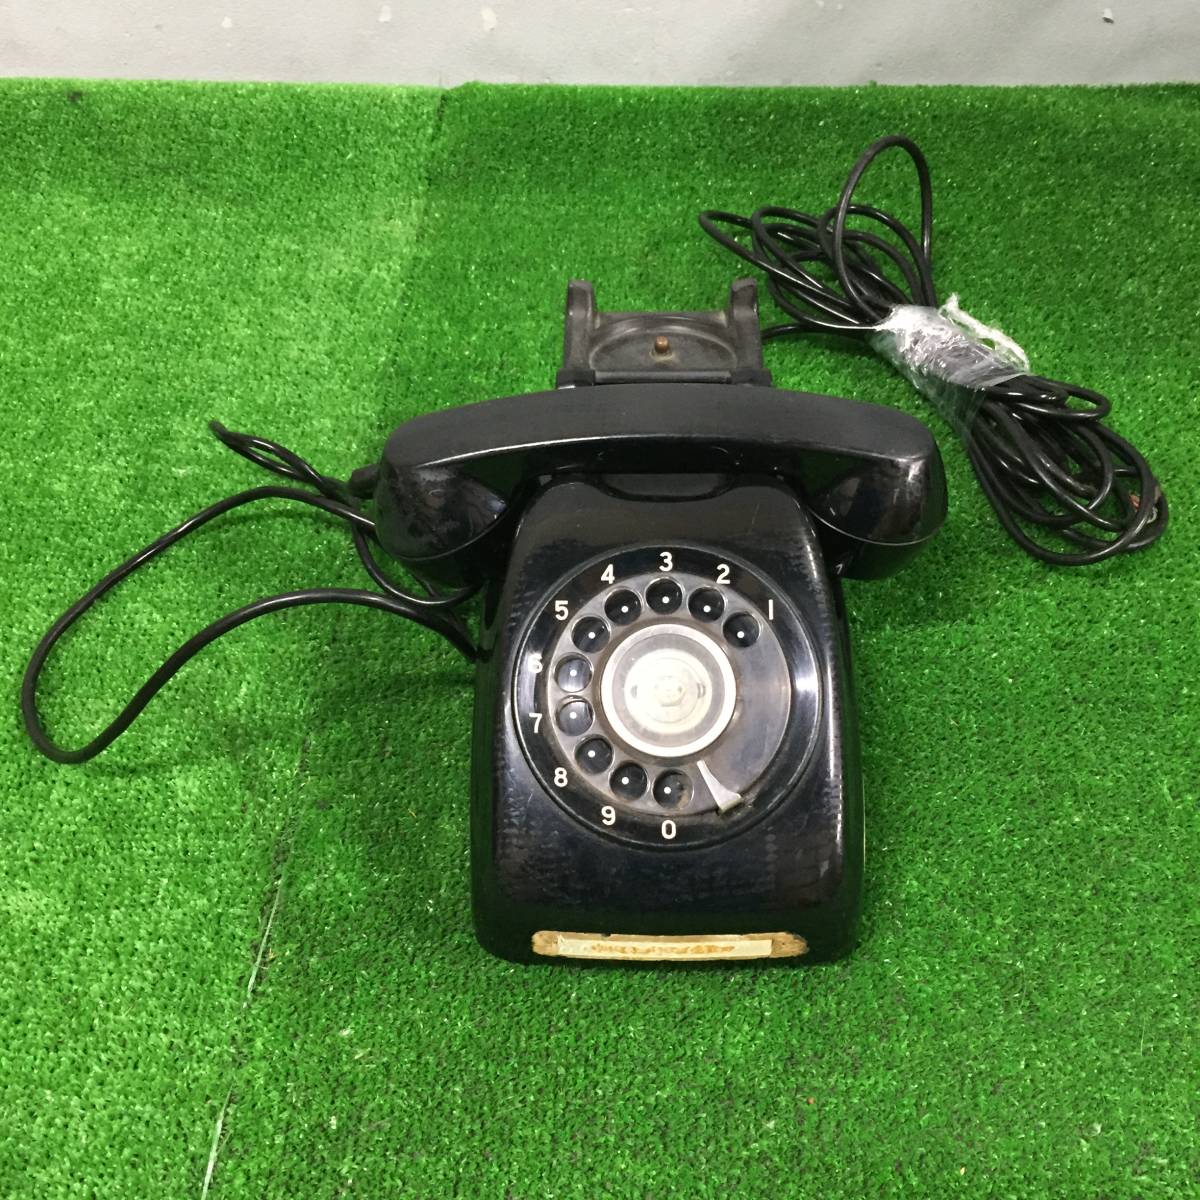 □ 【ジャンク】 黒電話 ダイヤル式 電話機 600-A1 600-A2 1970年製 1968年製 昭和レトロ アンティーク まとめてセット 14-5_画像5